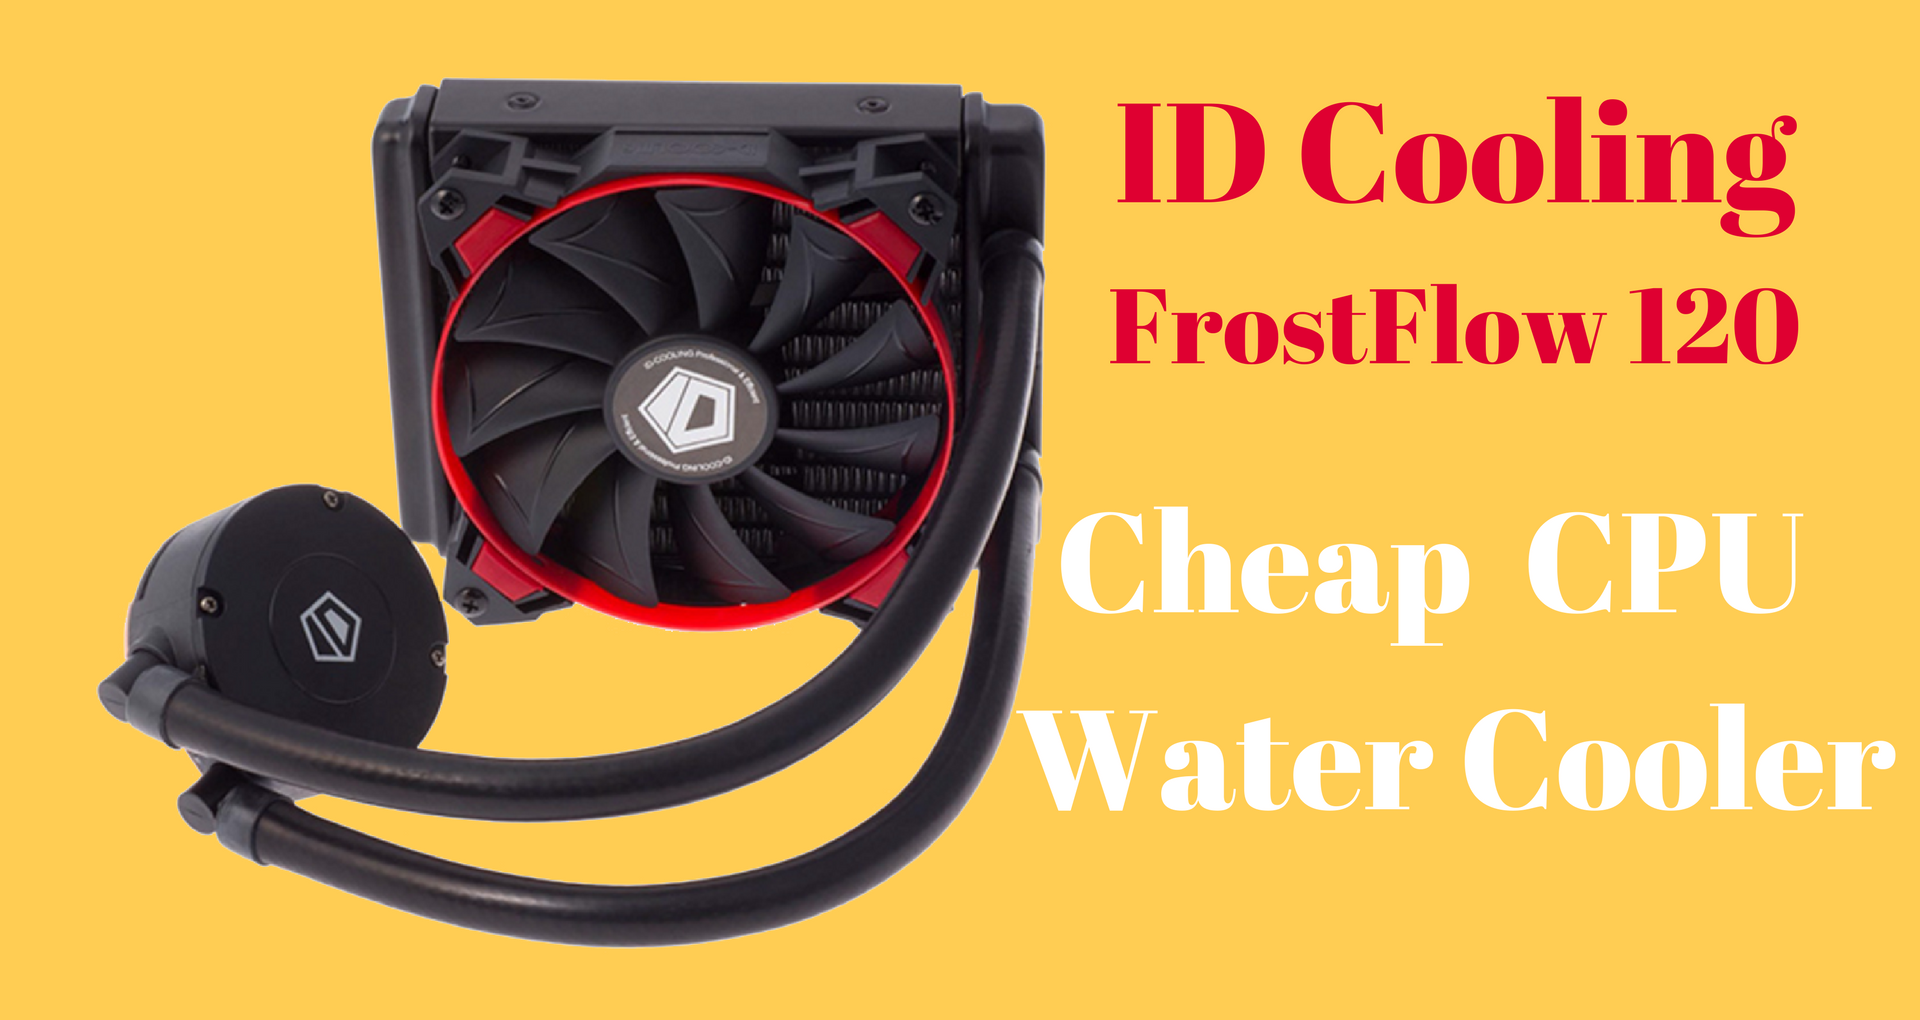 Cheap CPU Water Cooler